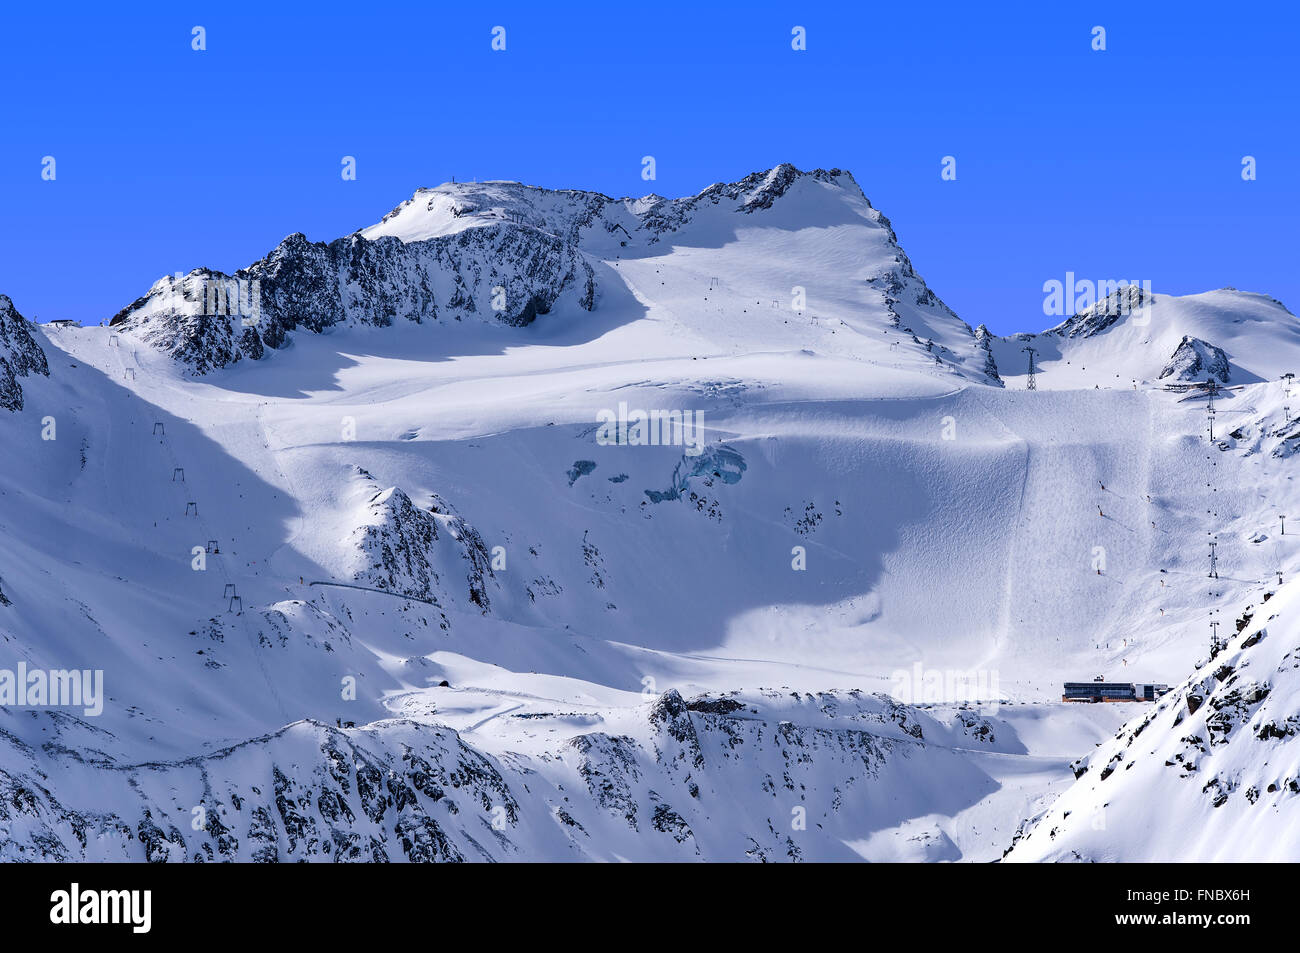 Impianti di risalita, piste e piste sul ghiacciaio Rettenbach in Solden località sciistica nelle Alpi Otztal in Tirol, Austria Foto Stock